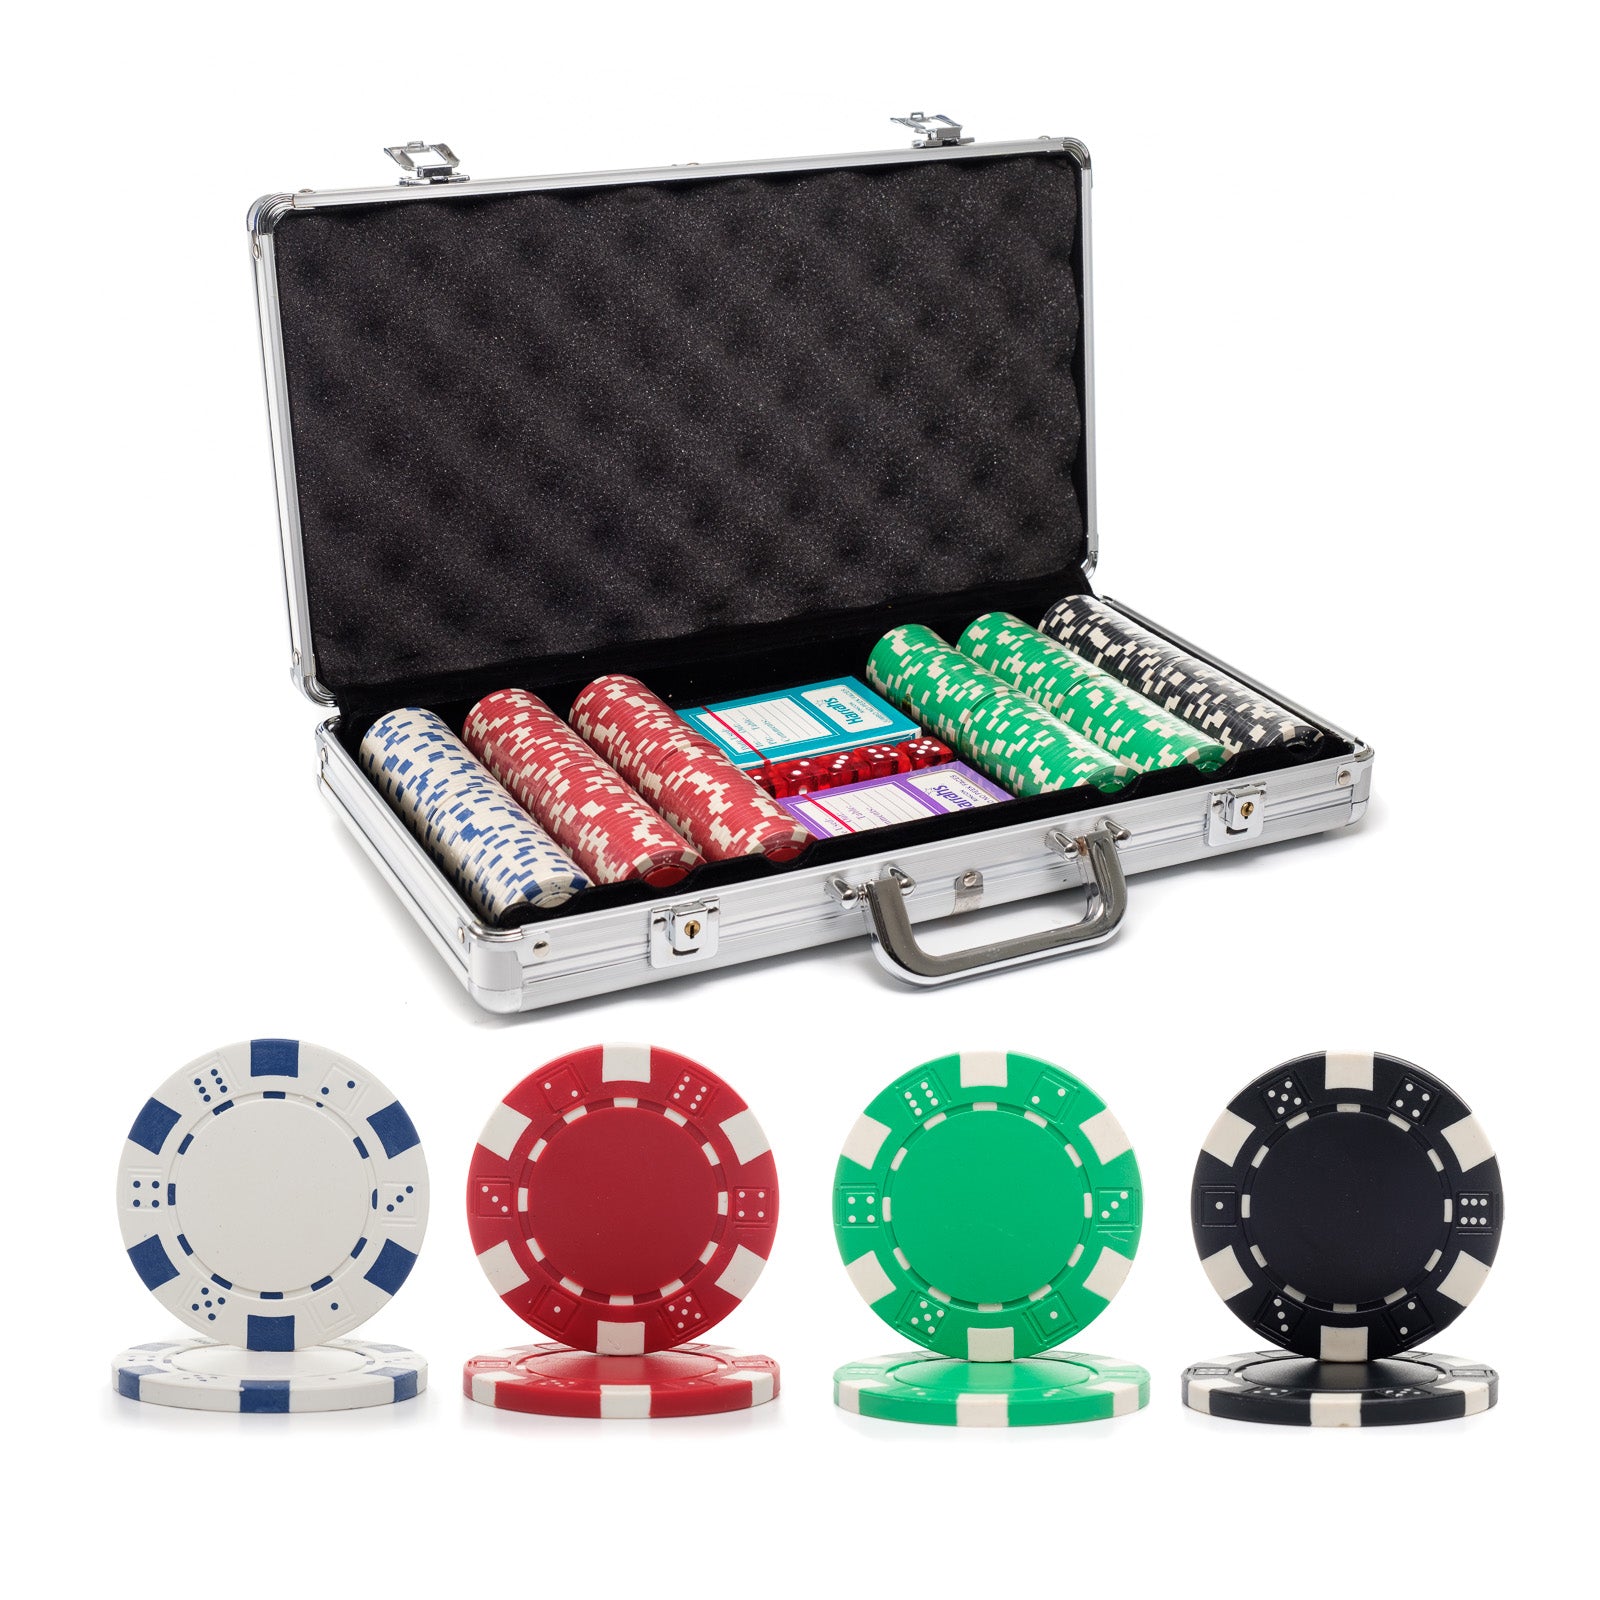 1000 poker 13.5g chip sets